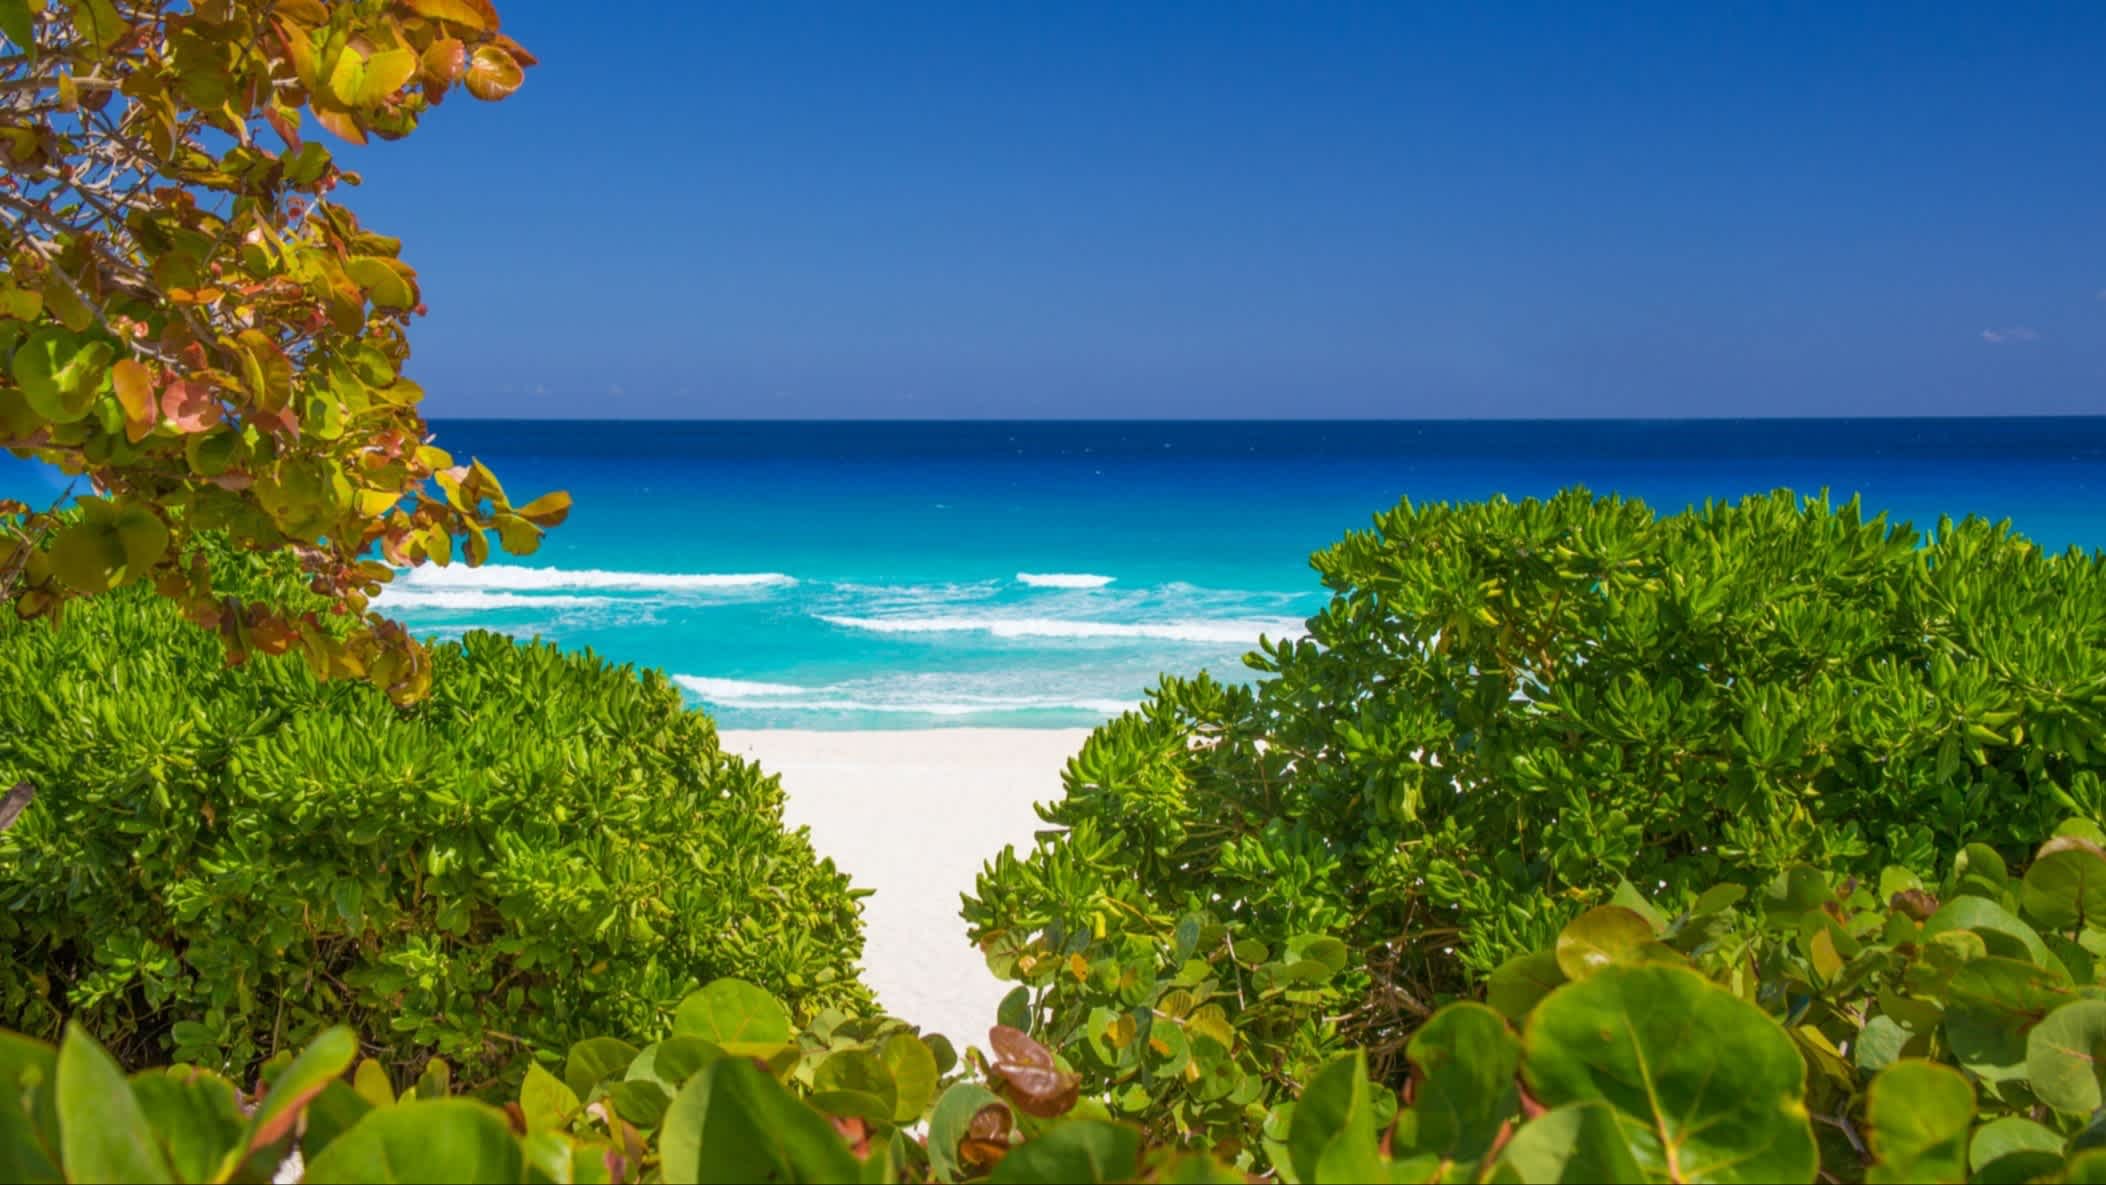 Paradiesischer Strand Playa Delfines in der Karibik Mexikos, mit weißem Sand, umgeben von grünen Bäumen und bei Sonnenschein sowie mit Blick auf das Meer.